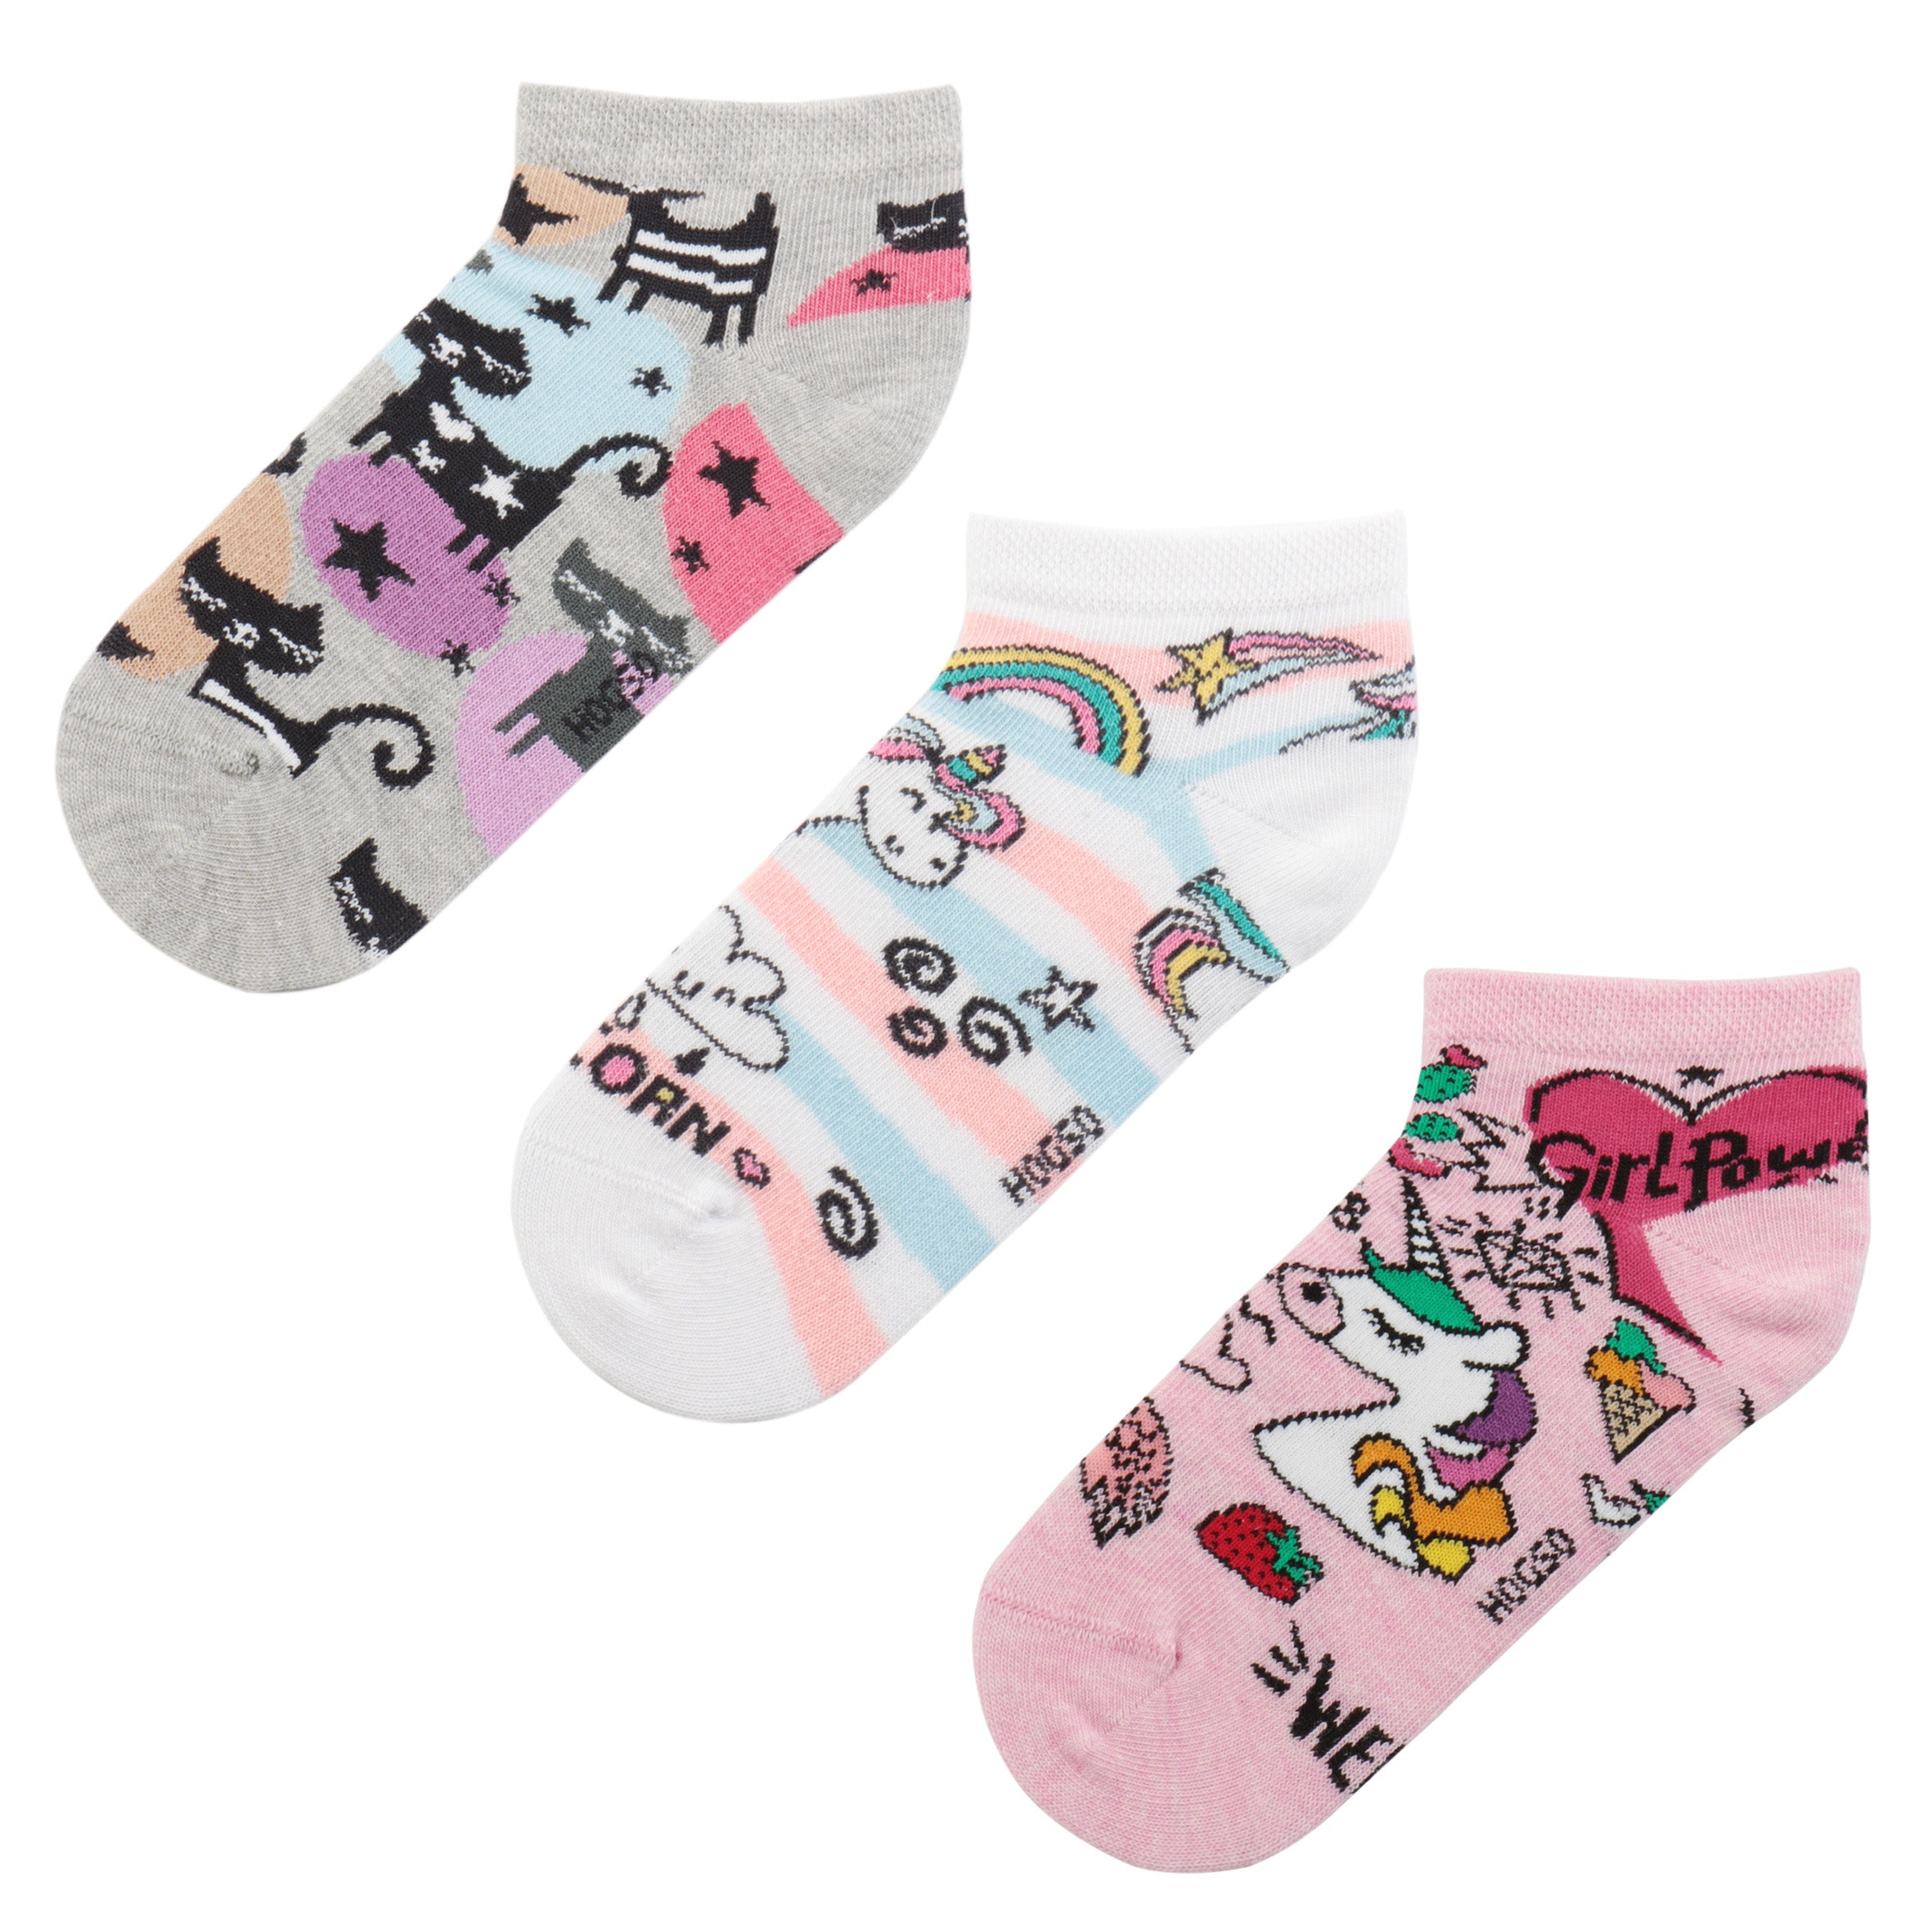 Unicorn-Kedi Desenli Çorap